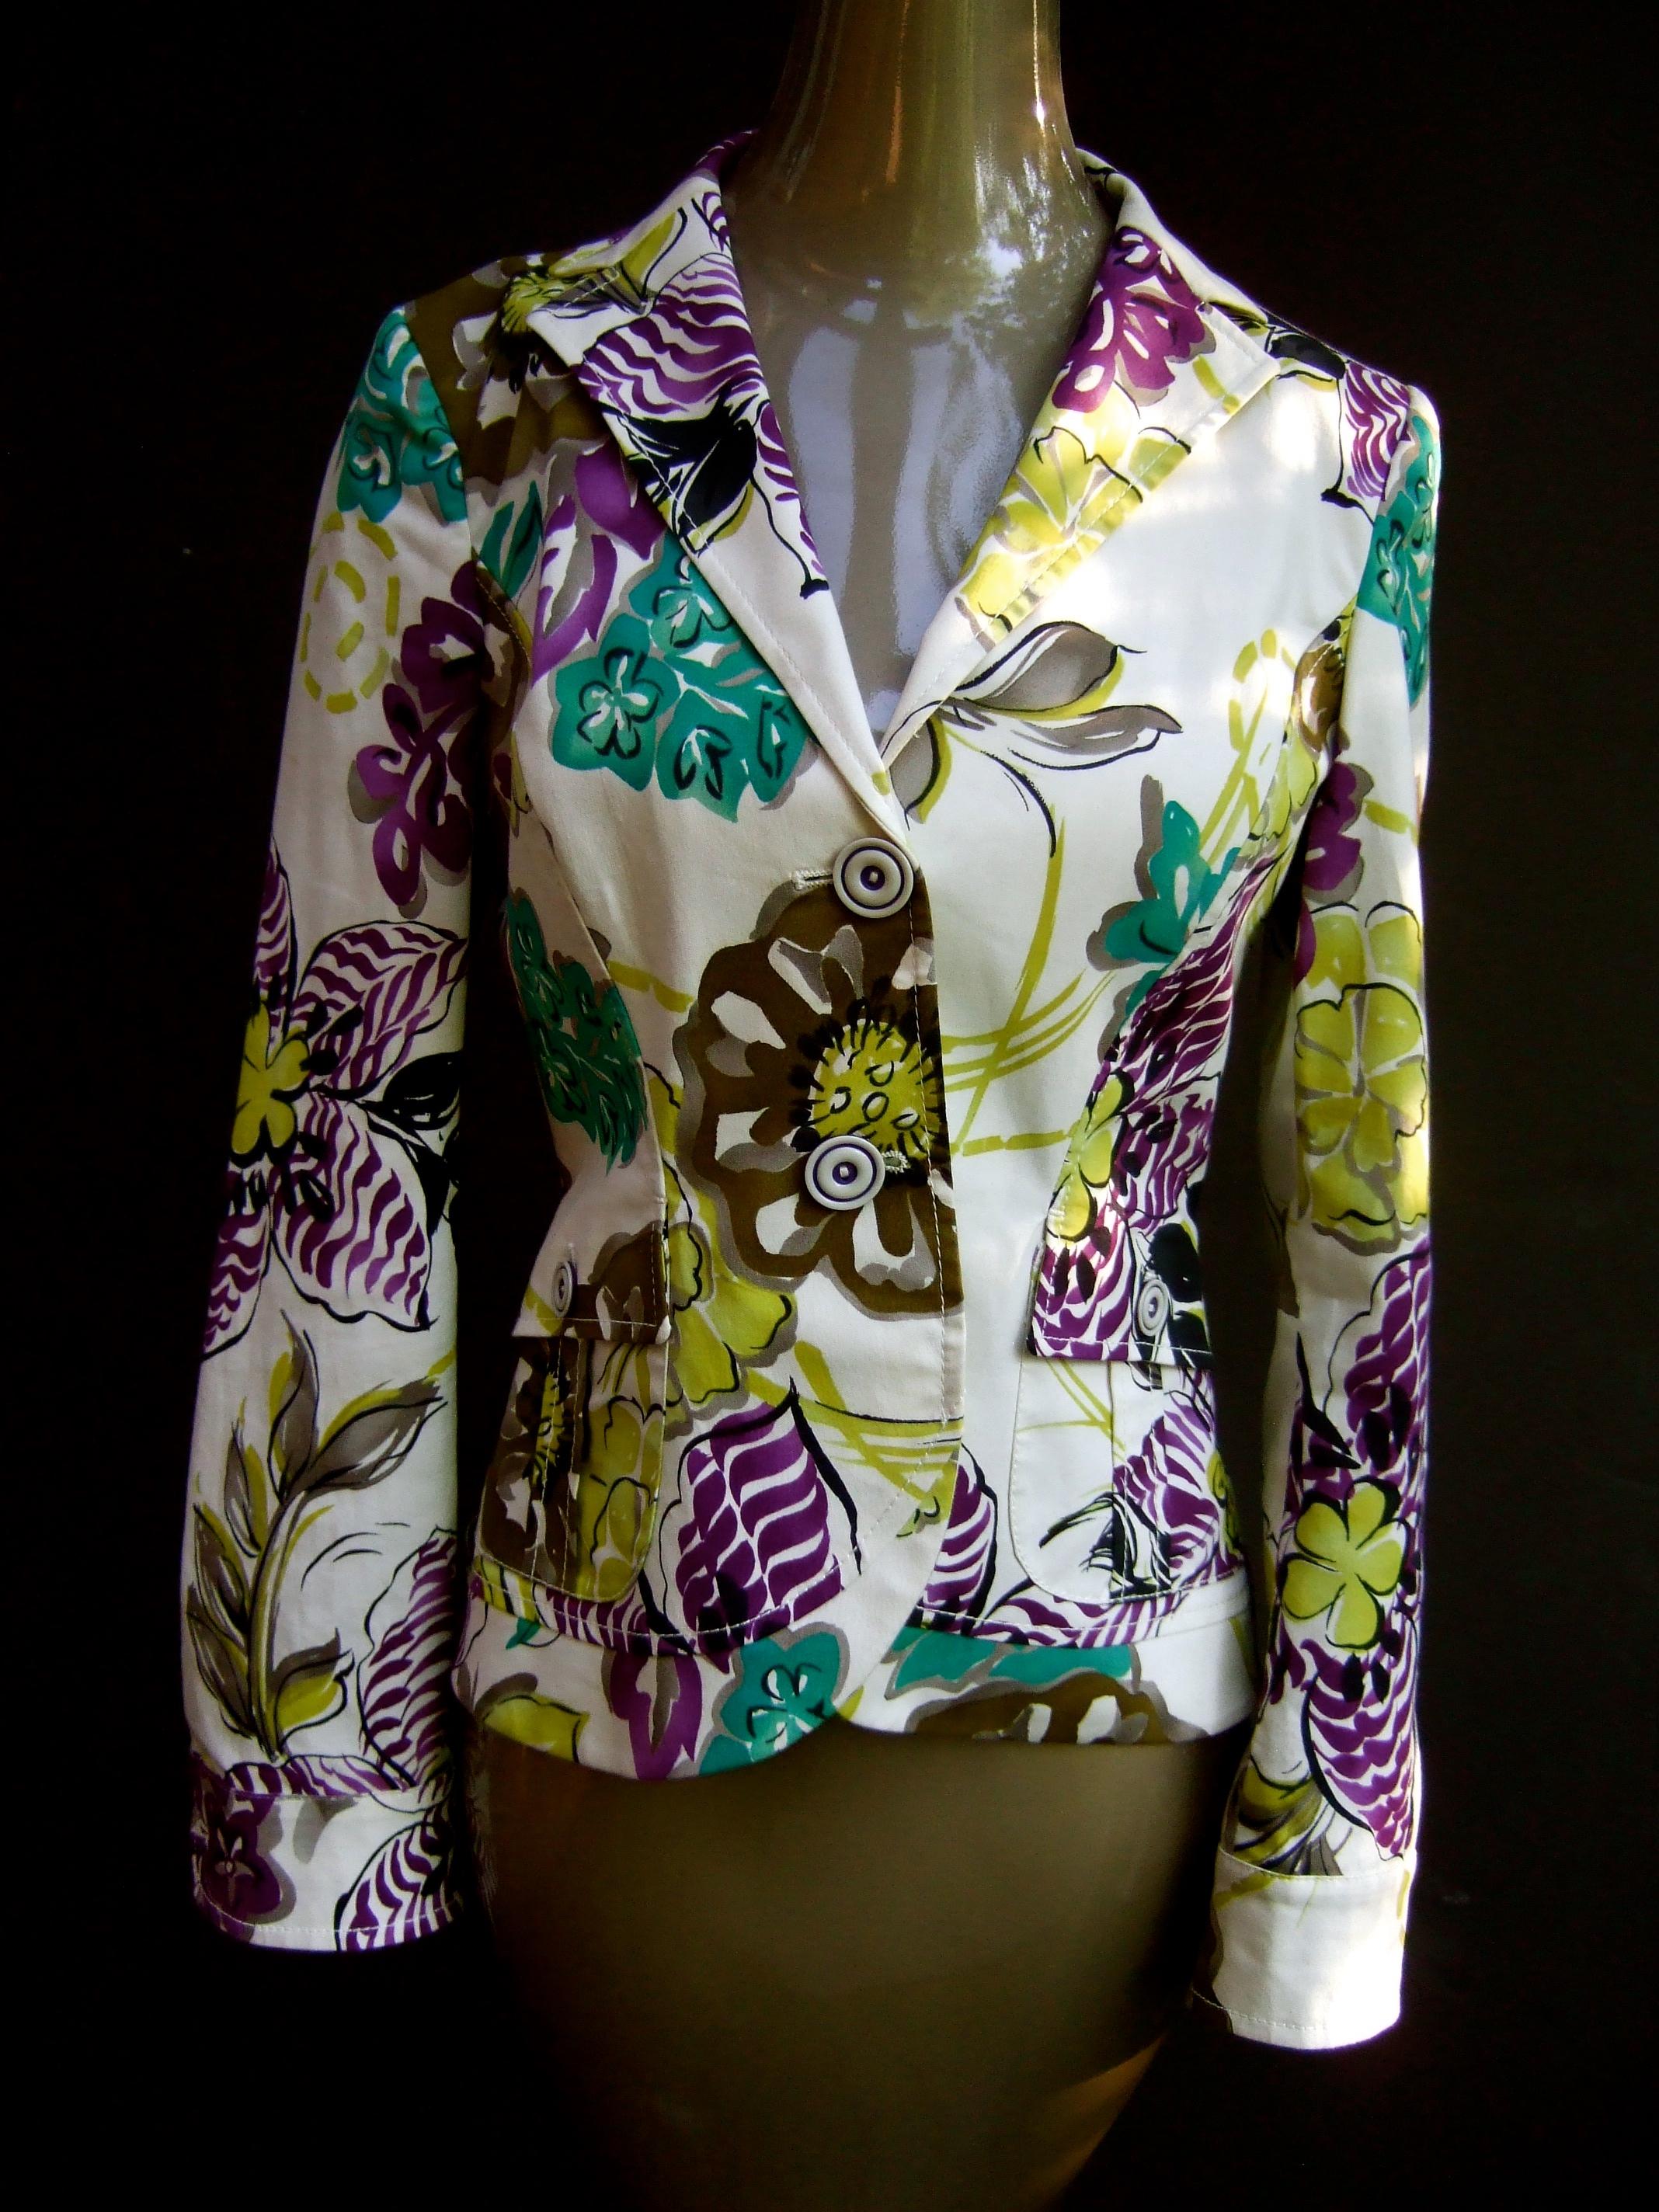 Etro Milano Veste en coton à imprimé floral vibrant Taille 42 
Conçu avec une paire de poches couvertes par un rabat 
Doublure en rayures verticales violettes et chartreuses
L'arrière se ferme avec une boucle réglable 
Accentué par des boutons en